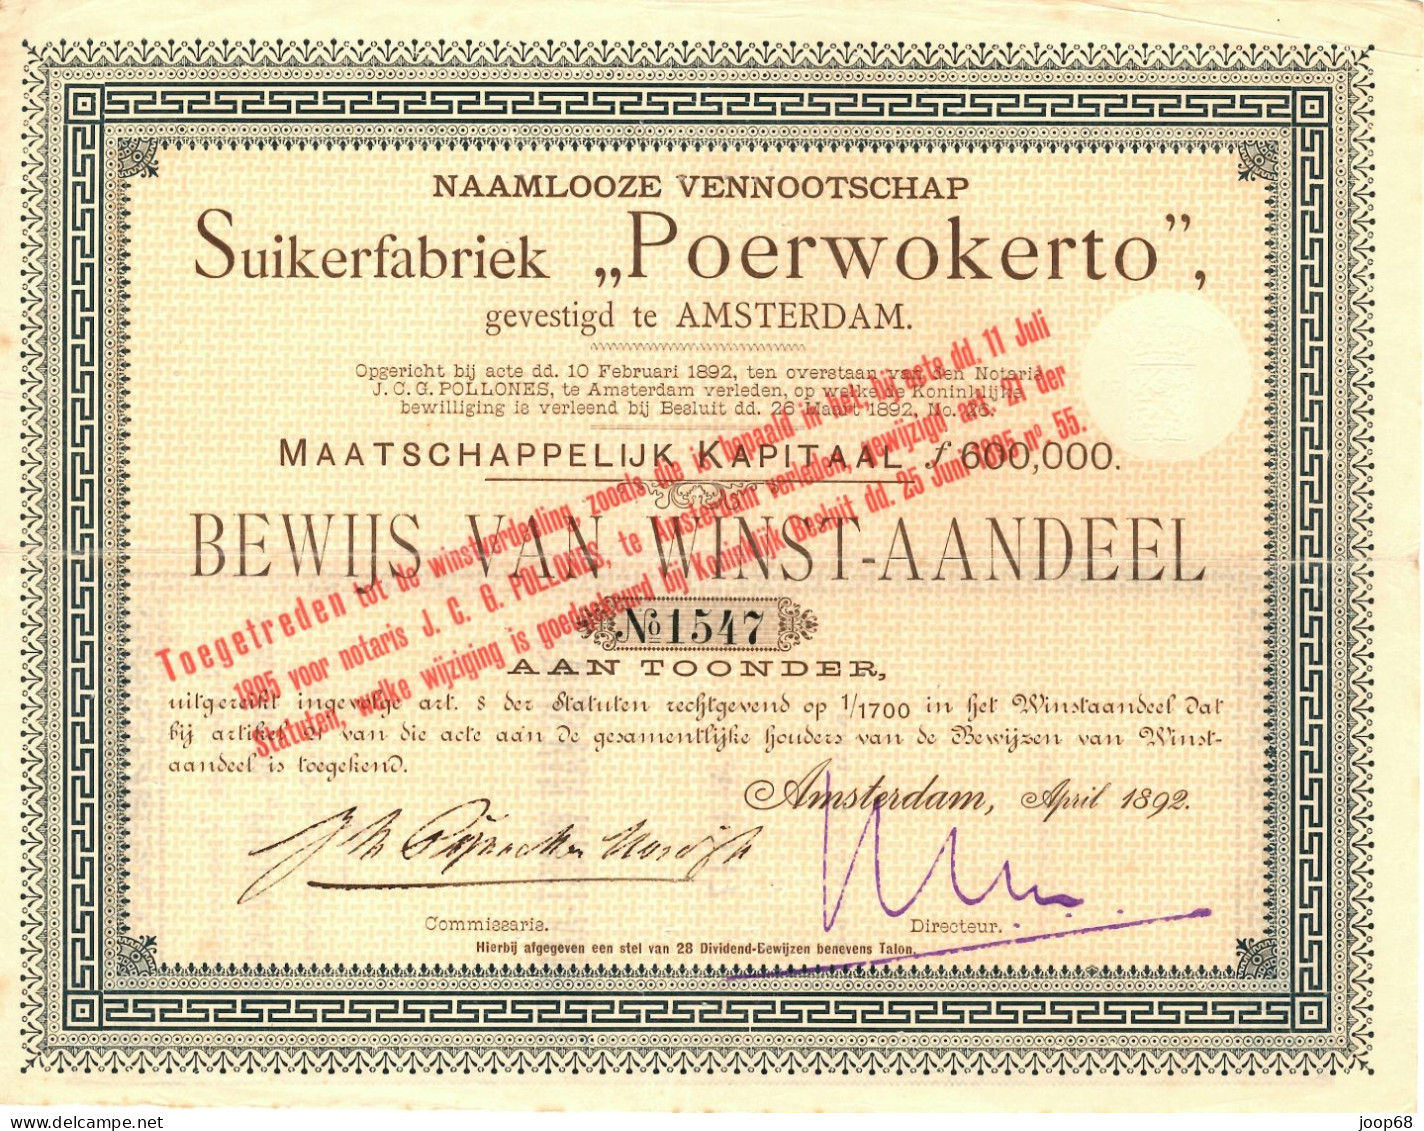 Suikerfabriek "Poerwokerto" N.V. - Winst-Aandeel - Amsterdam, April 1892 Indonesia - Agriculture